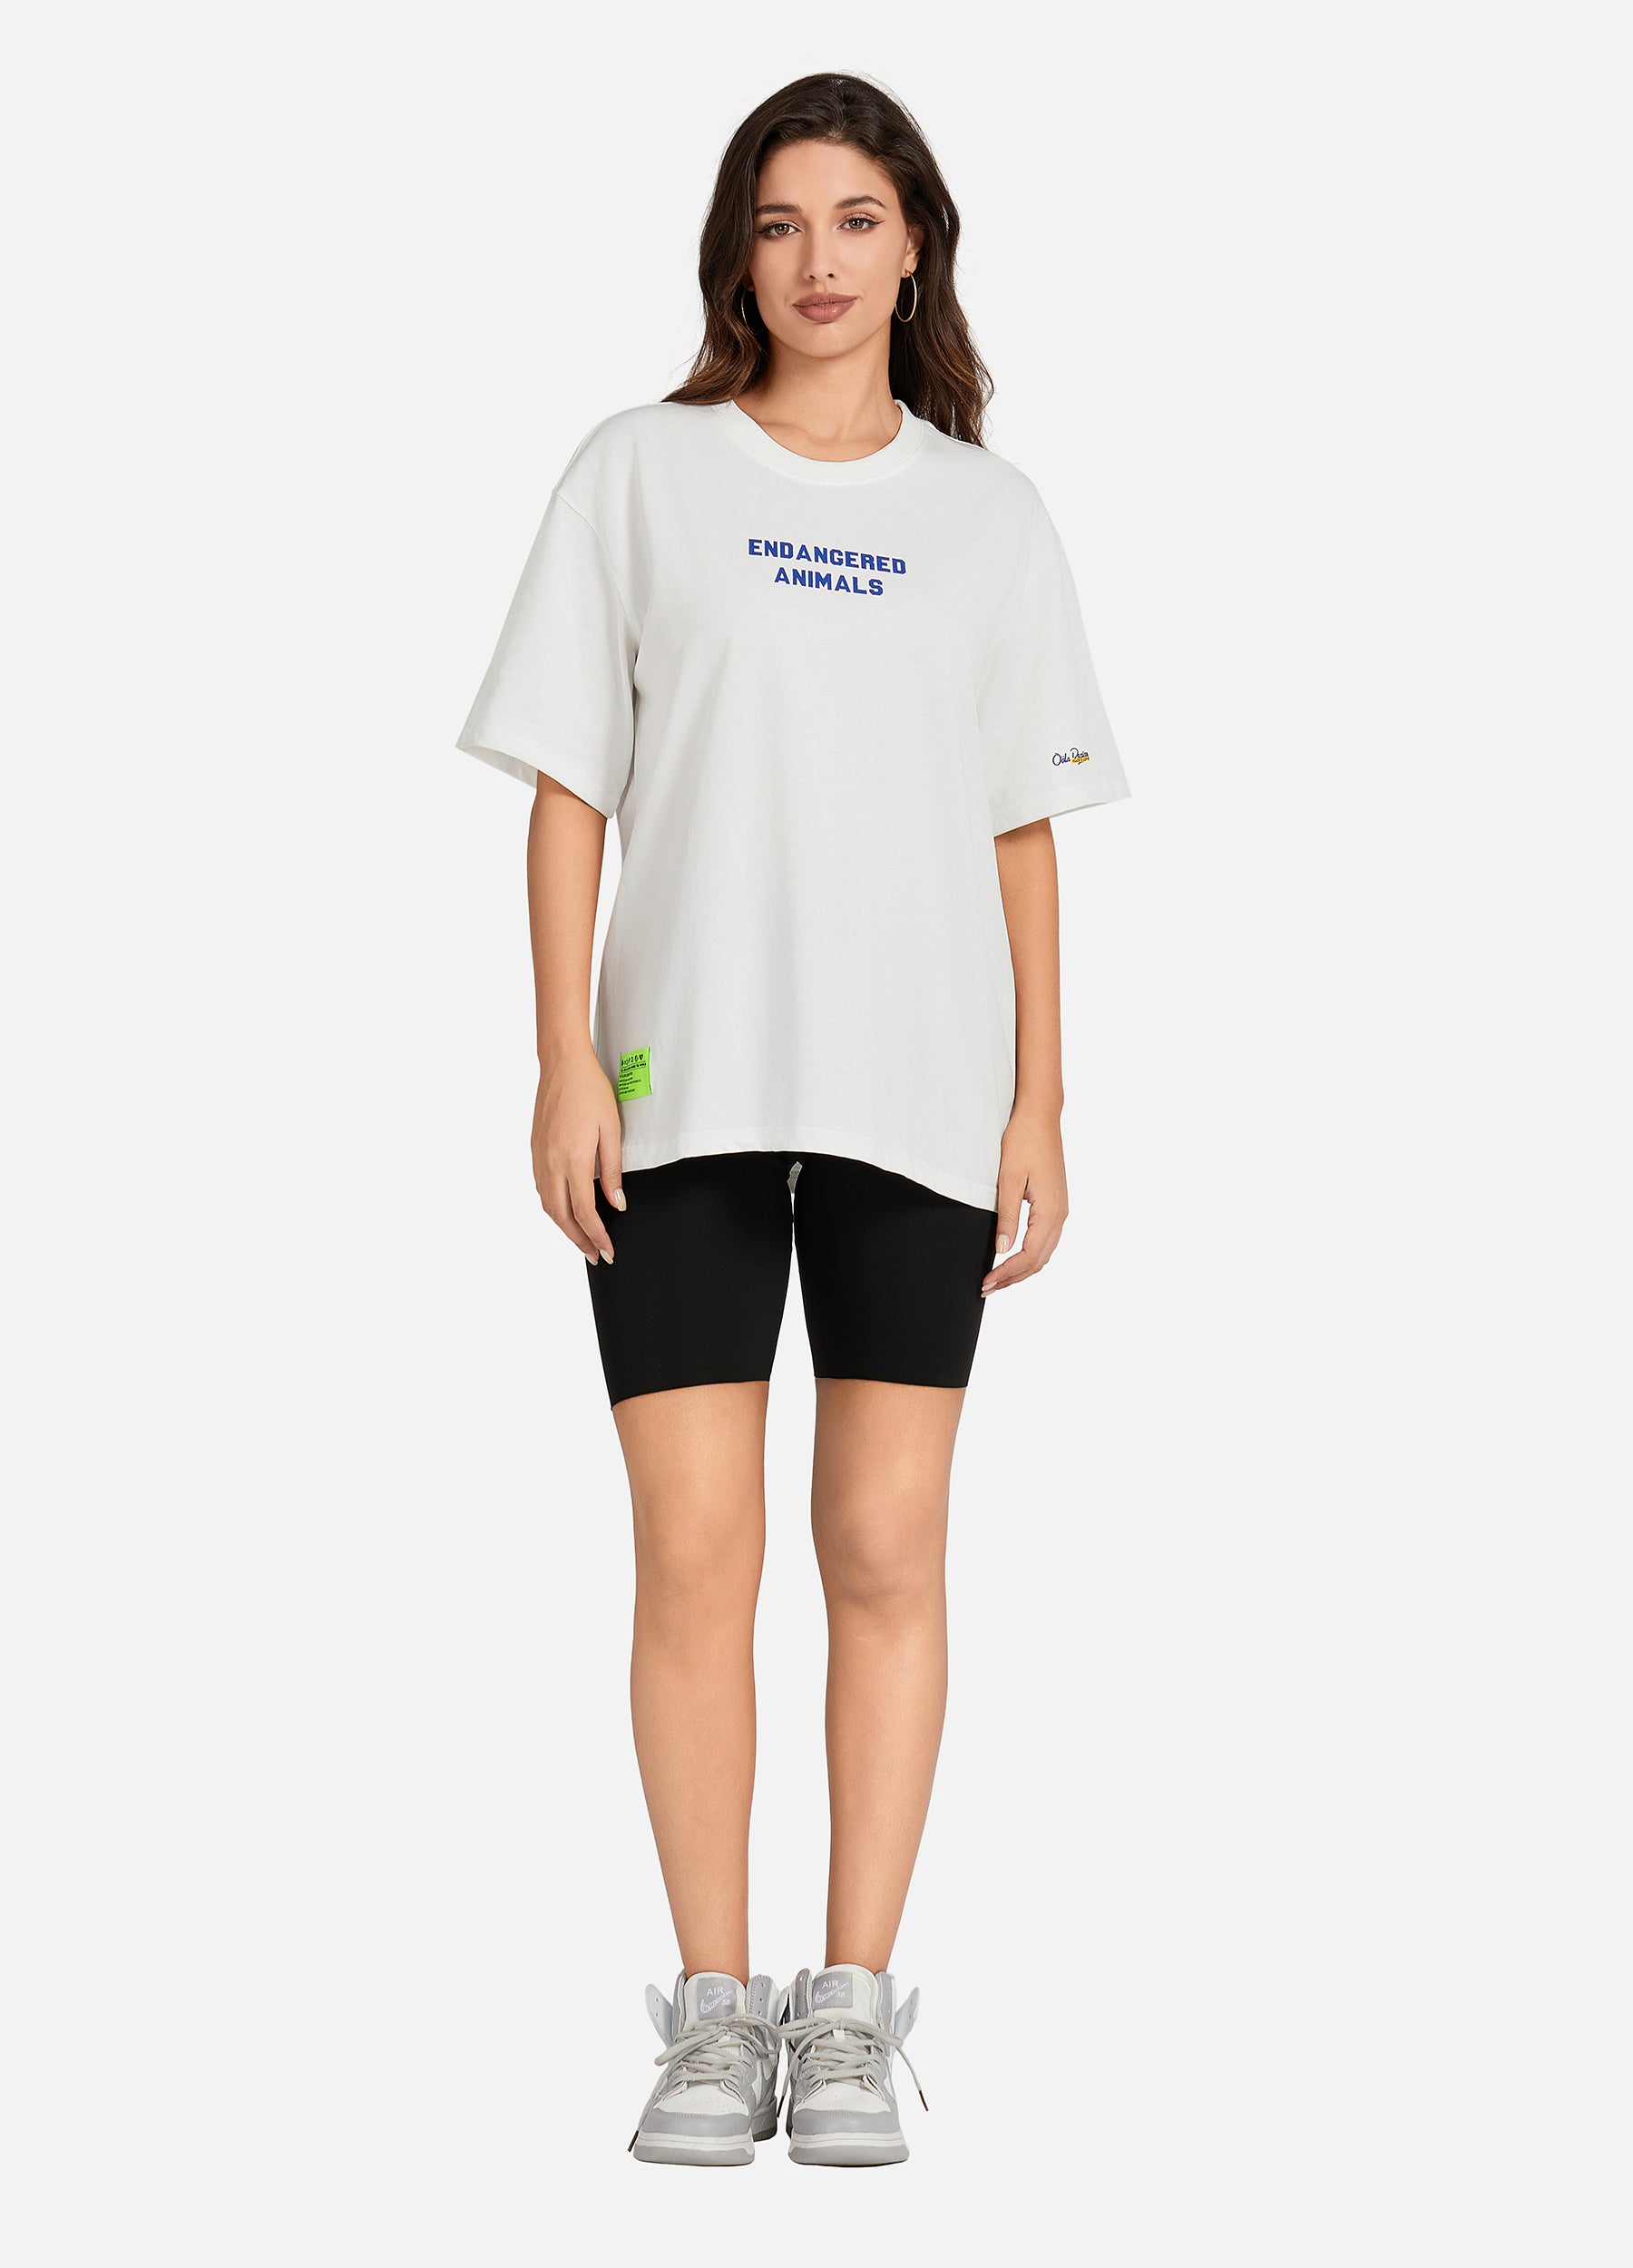 OOLA Unisex 100% Heavy Cotton T-Shirt Short Sleeve Couple T Shirts